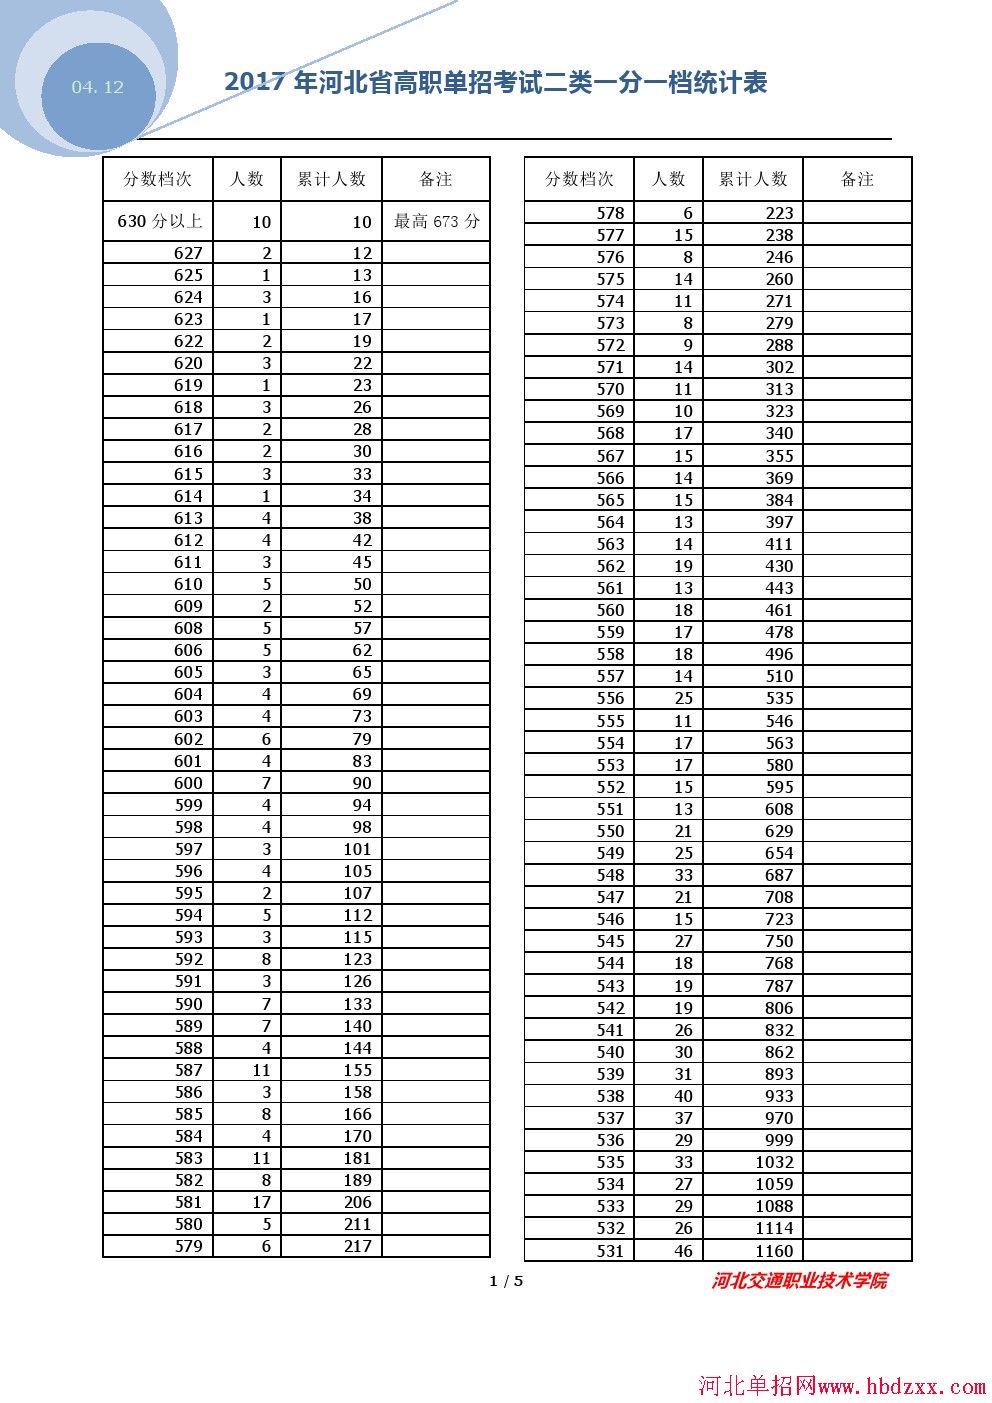 2017年河北省高职单招考试二类一分一档统计表